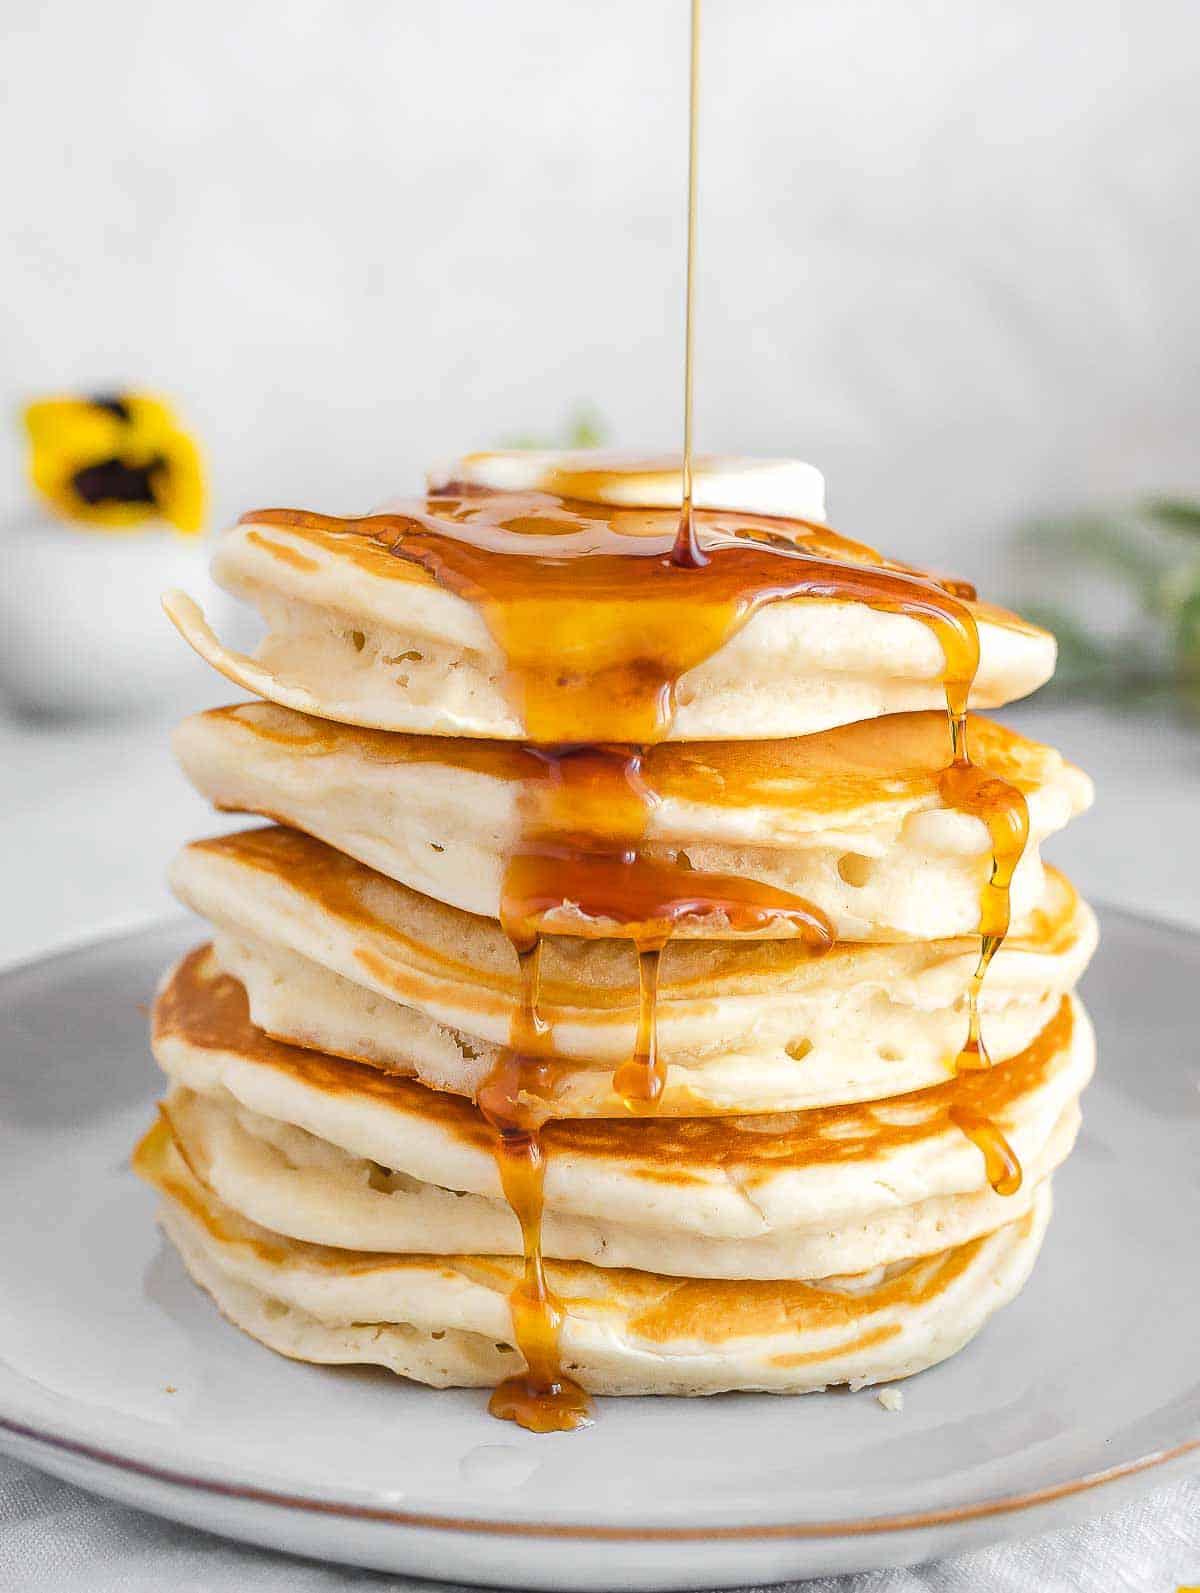 Vegan pancake with syrup